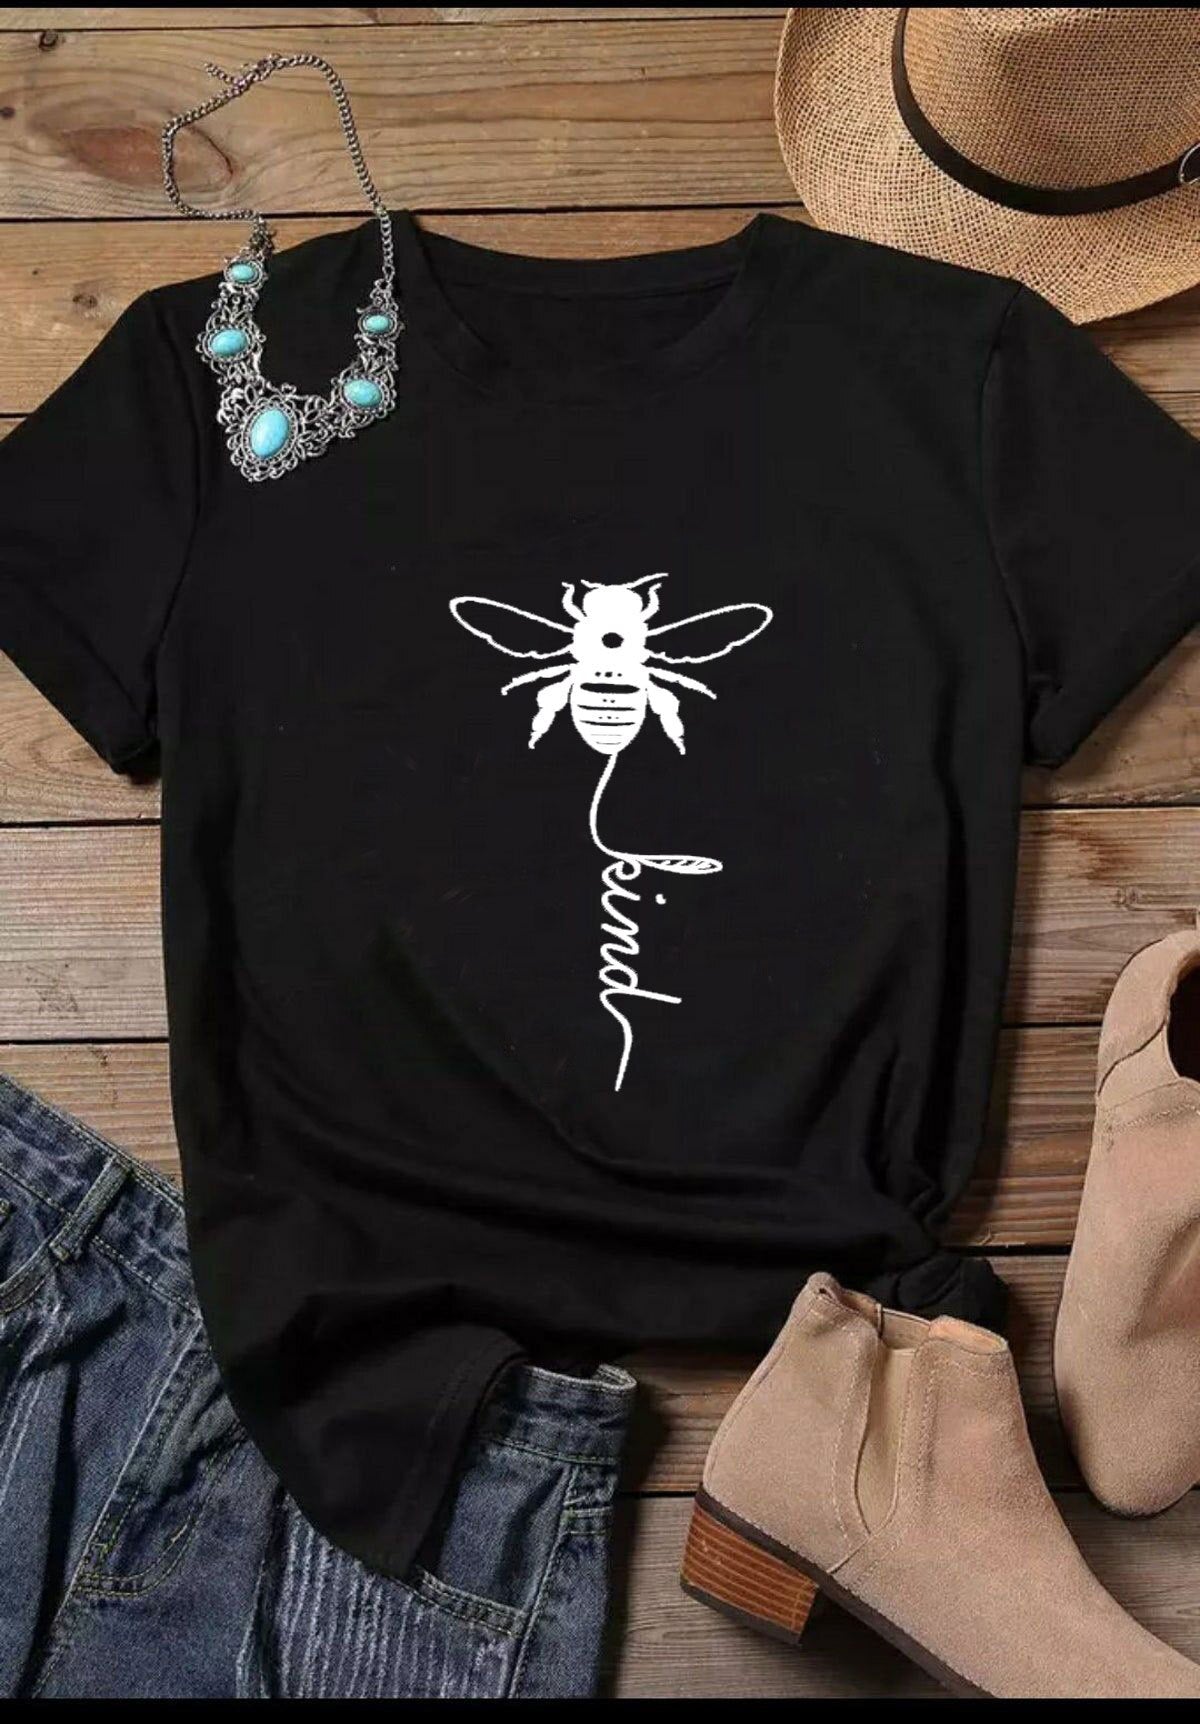 Bee Kind Women Tee DromedarShop.com Online Boutique